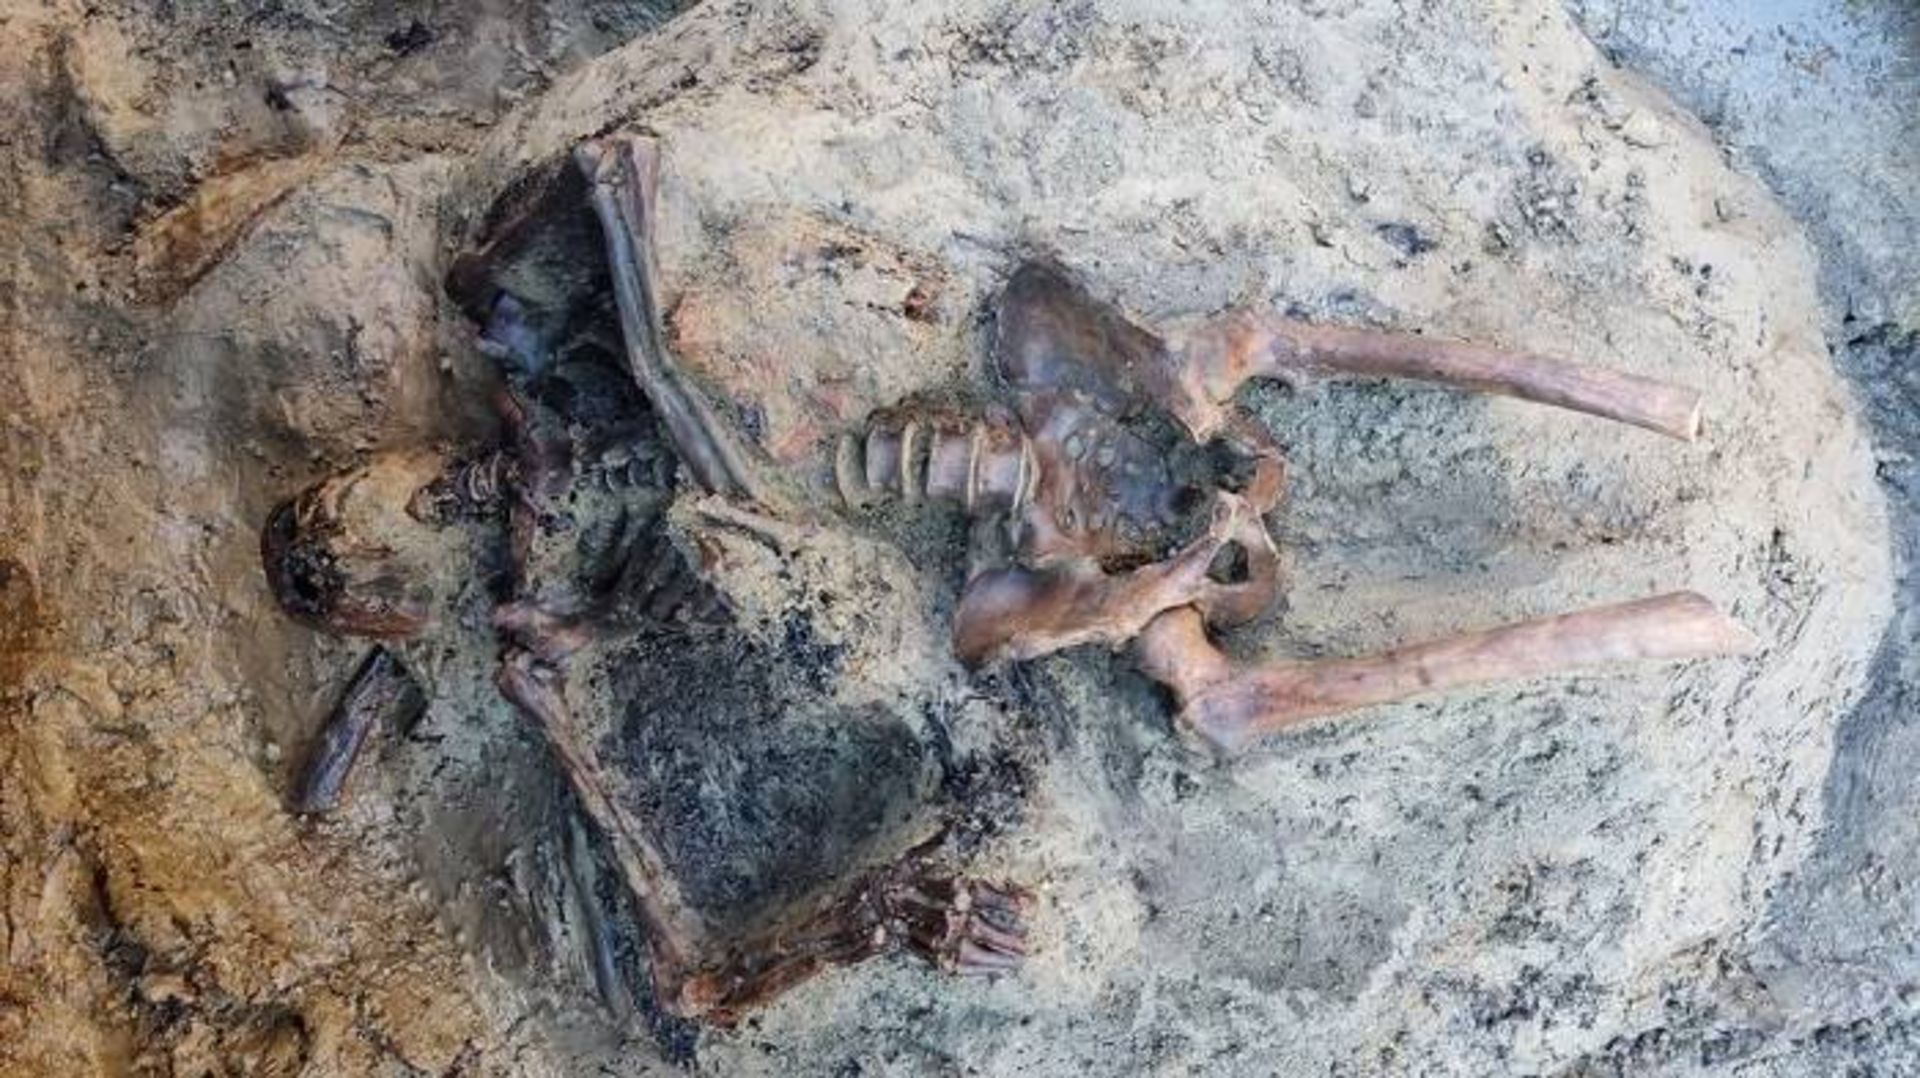 بقایای مرد کشته شده توسط آتشفشان / Remains of man